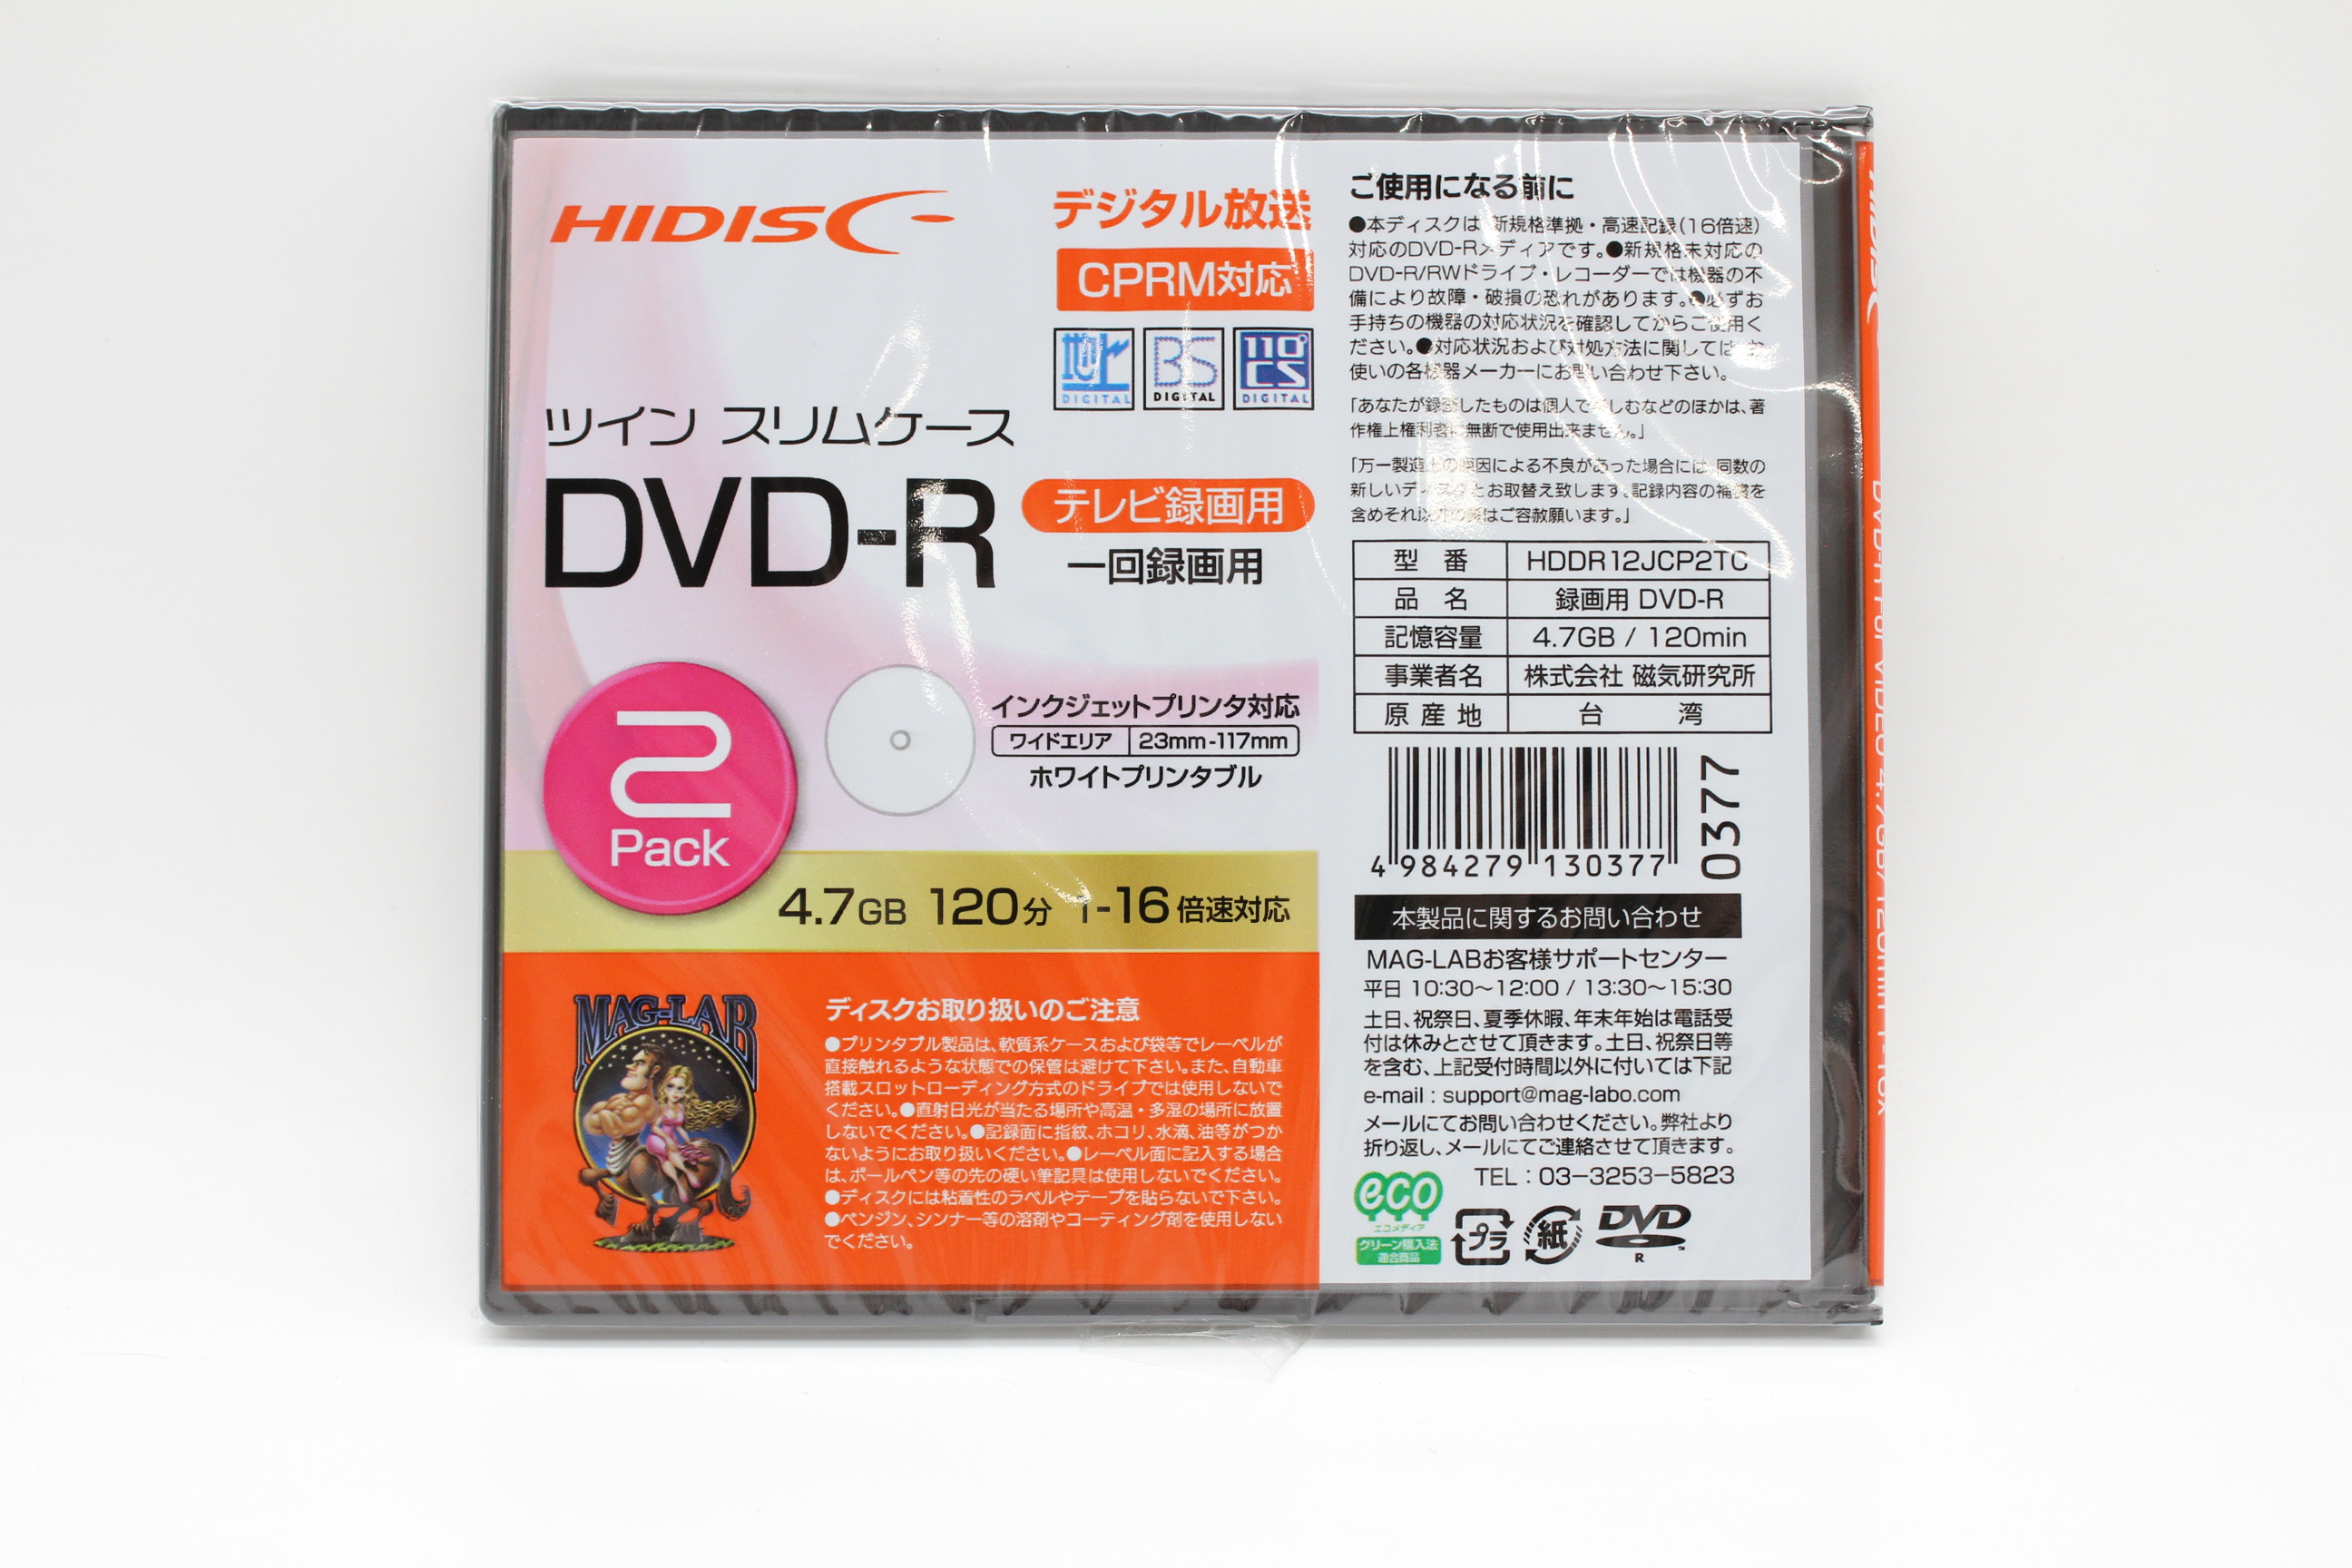 DVD-R 120分 16倍速録画用2枚入